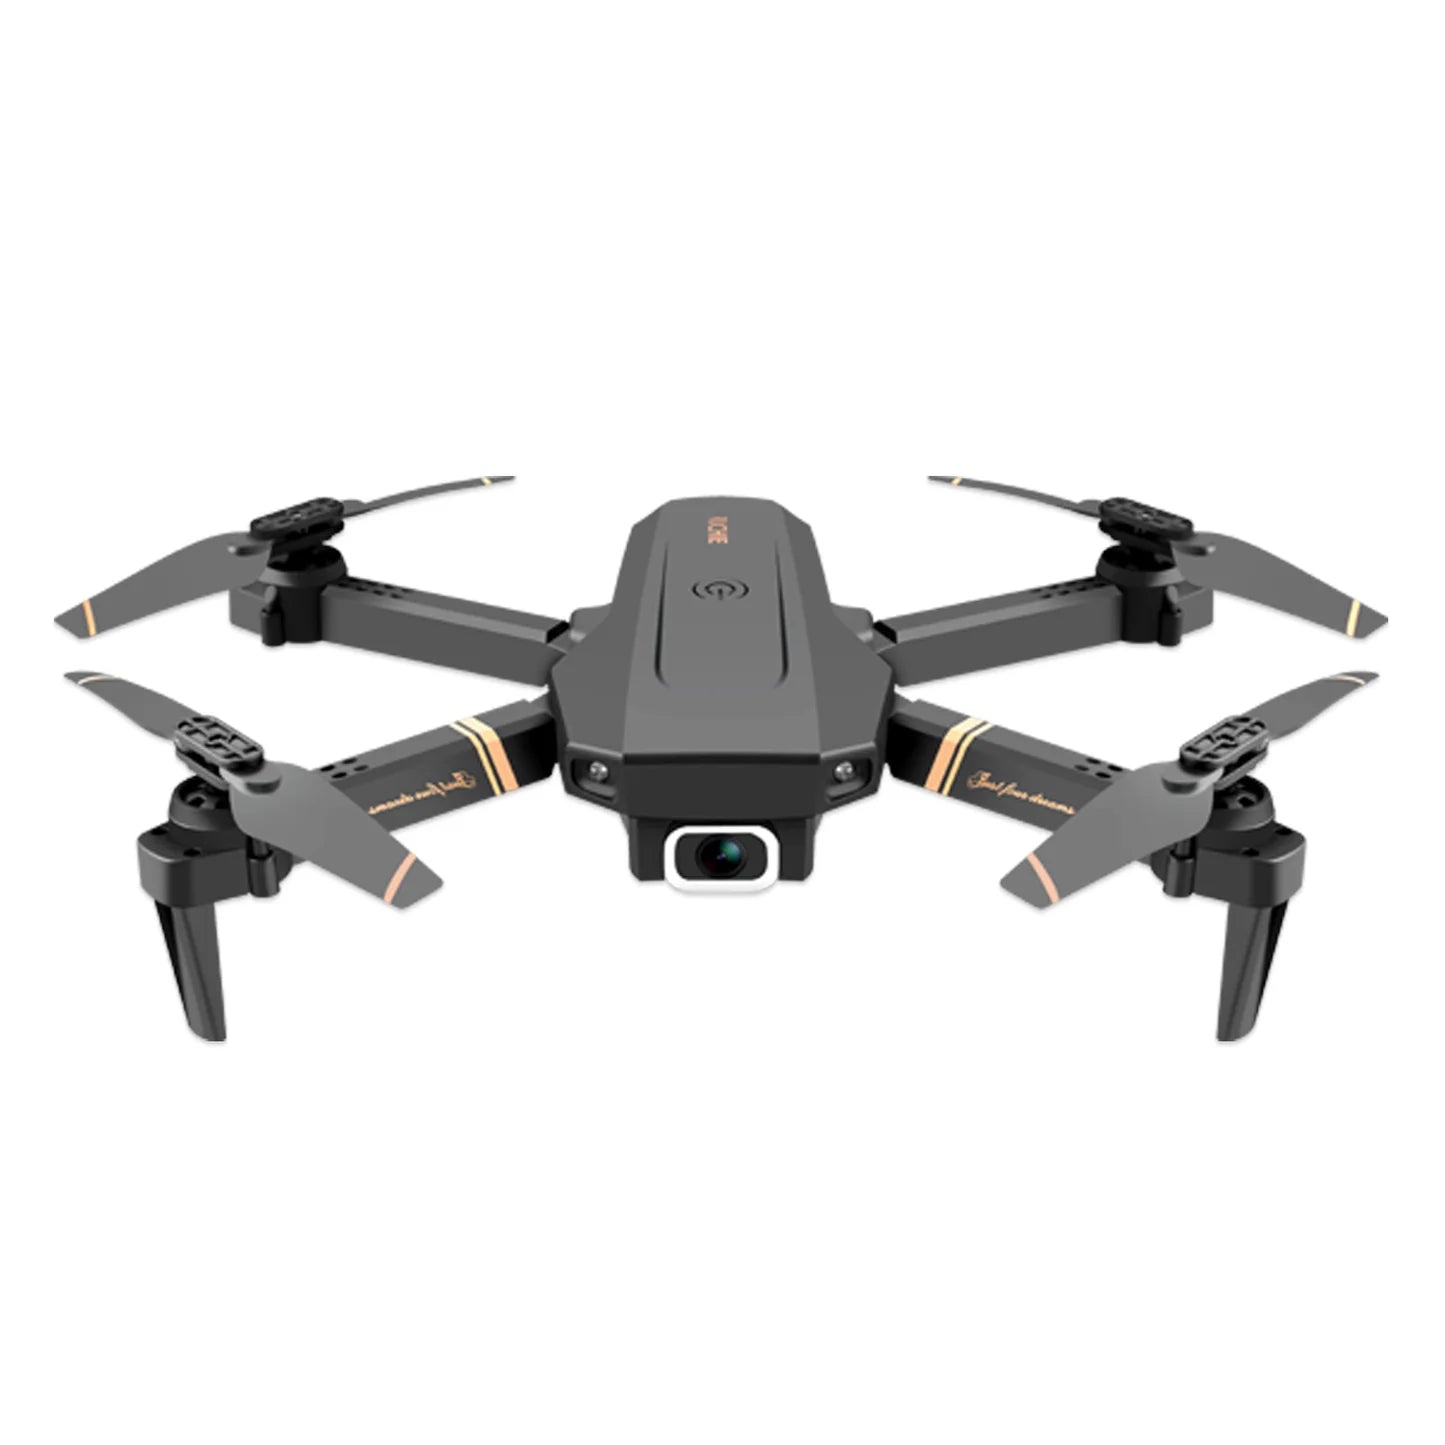 V4 Rc Drone - Telecamera grandangolare 4K HD 1080P WiFi fpv Drone Doppia fotocamera Quadcopter Trasmissione in tempo reale Elicottero Dron Regalo Giocattoli